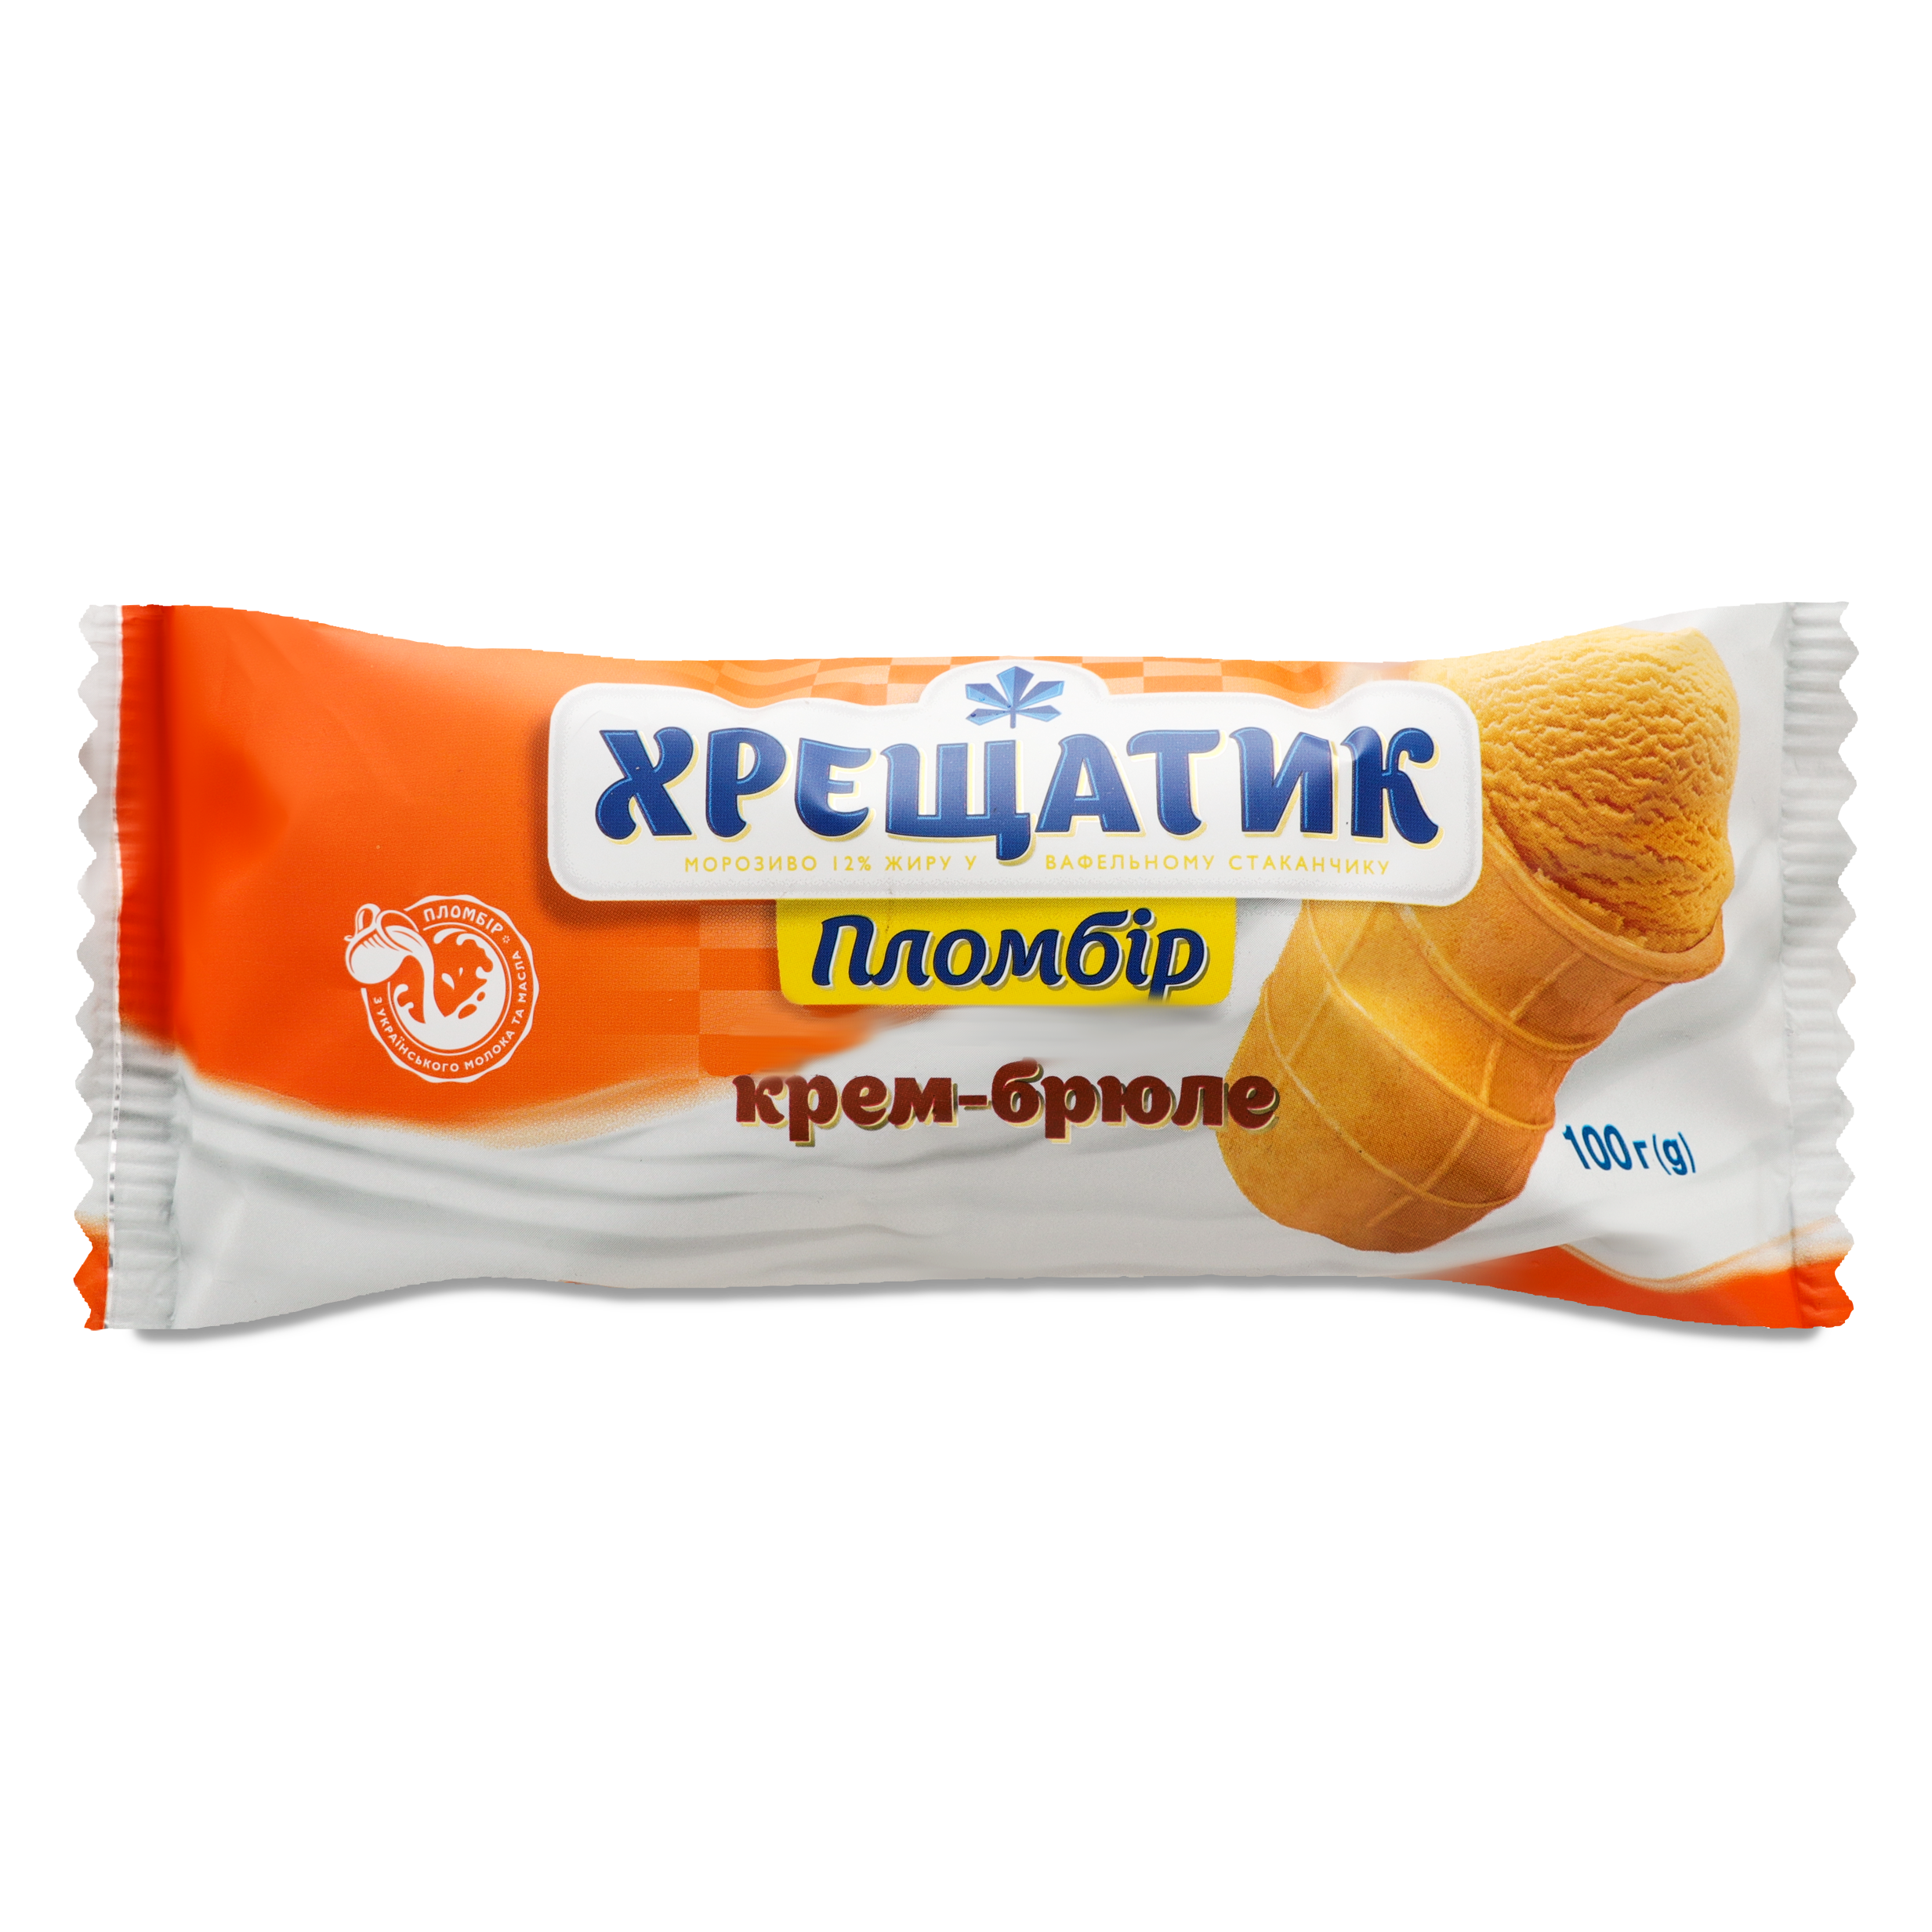 Khreshchatyk cream-brulee vanilla ice-cream 100g 2